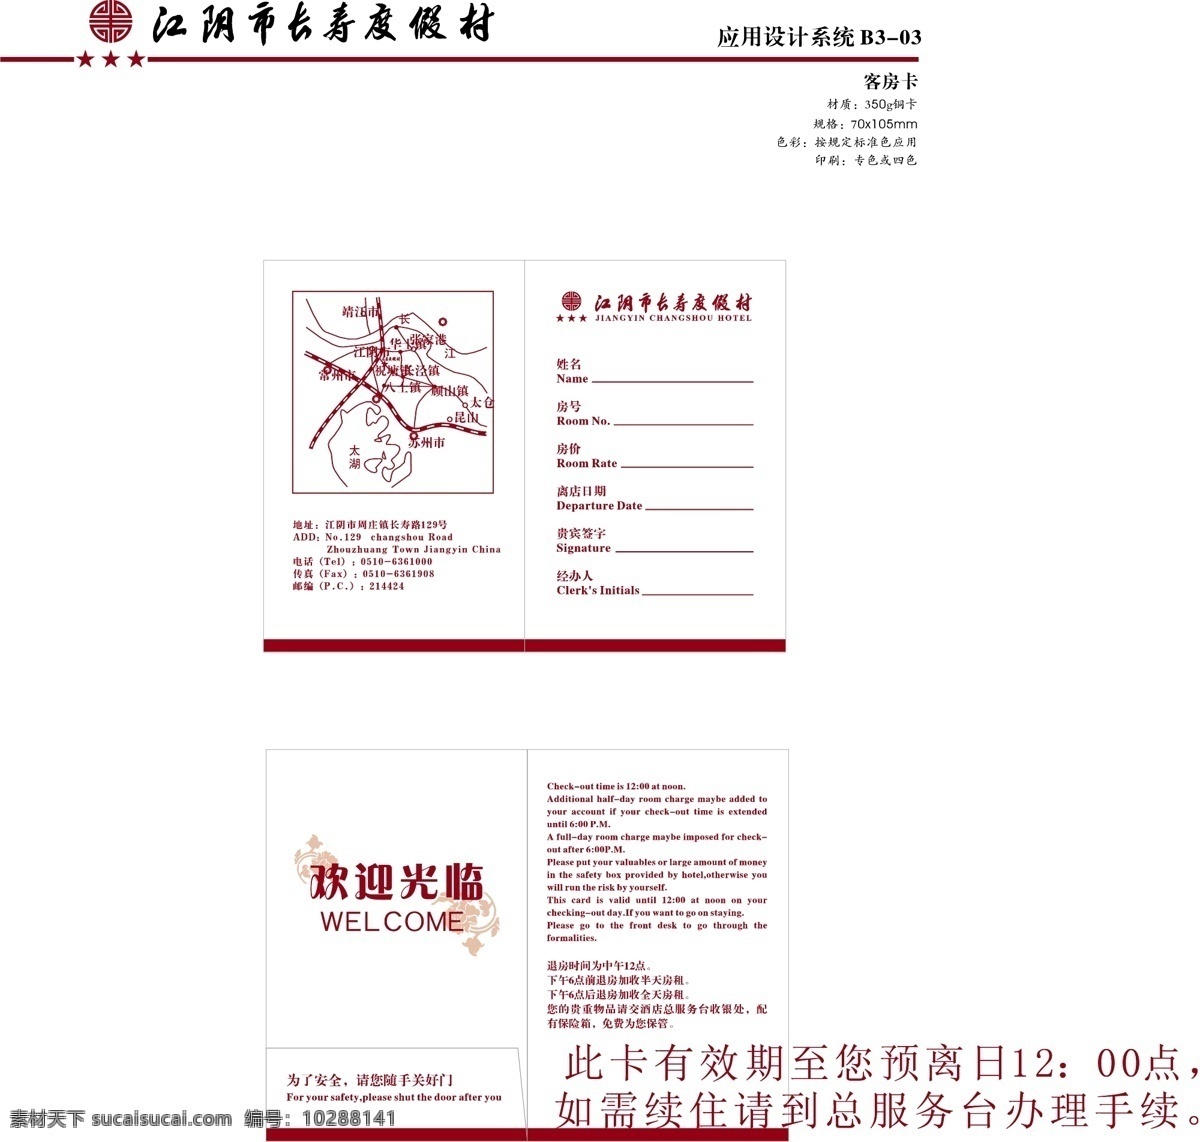 江阴 长寿 渡假村 vi vi宝典 vi设计 矢量 文件 应用系统b3 矢量图